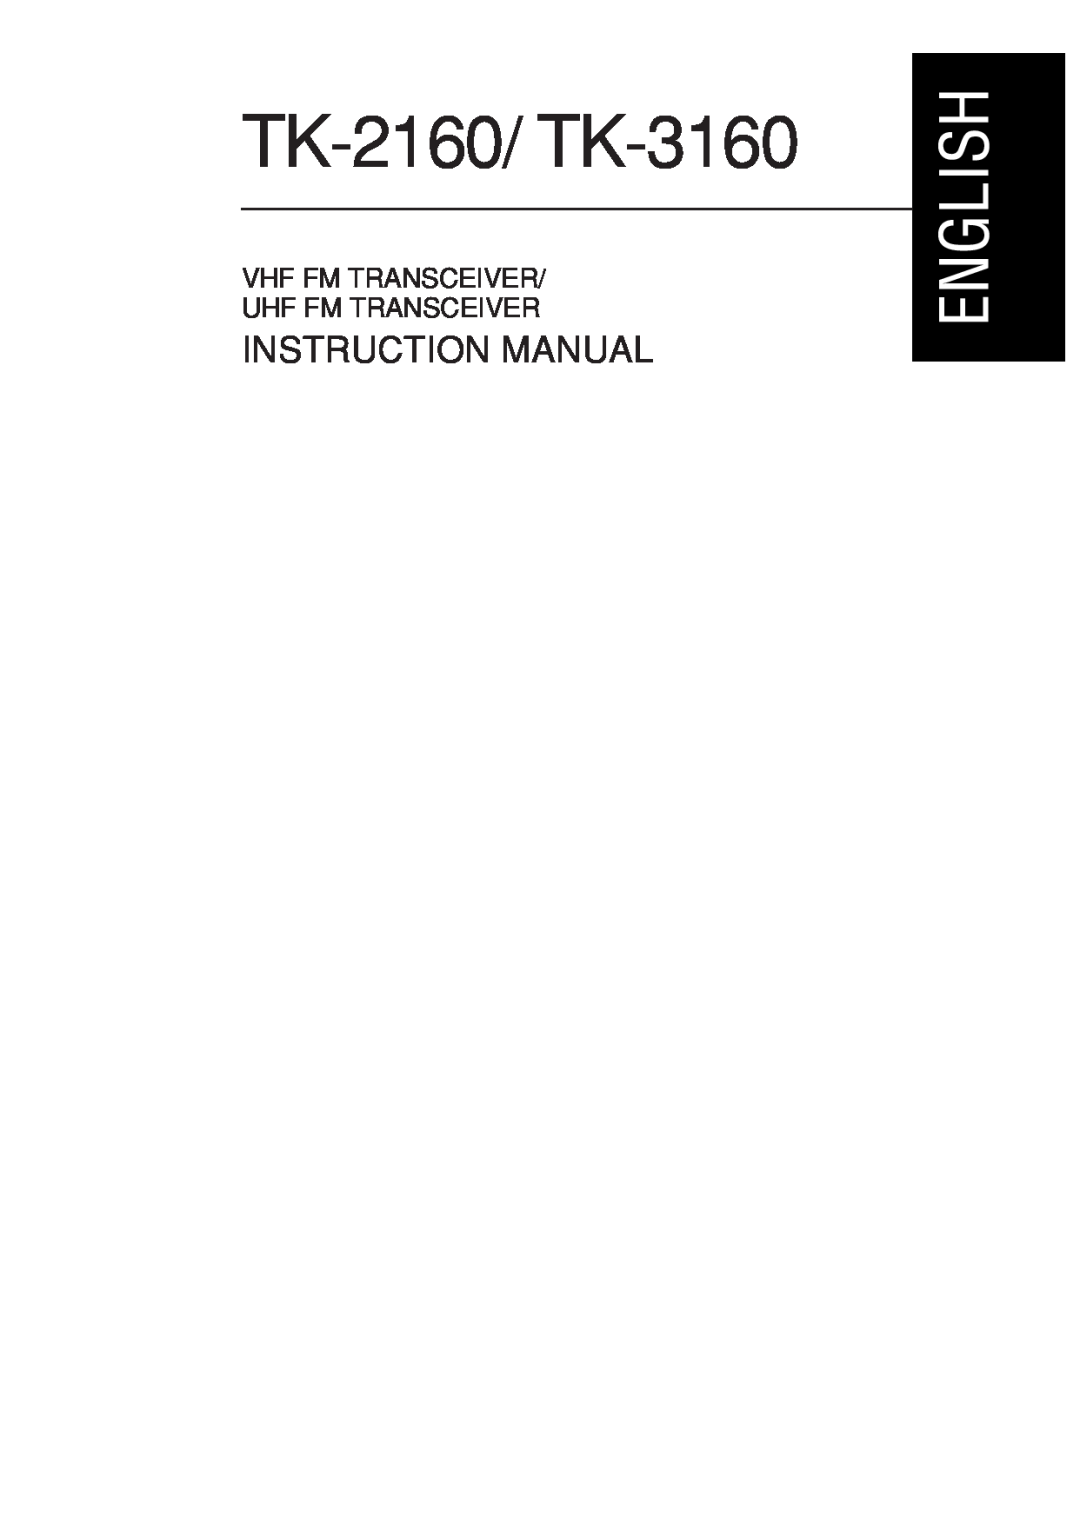 Kenwood instruction manual TK-2160/ TK-3160, Instruction Manual, Vhf Fm Transceiver Uhf Fm Transceiver 